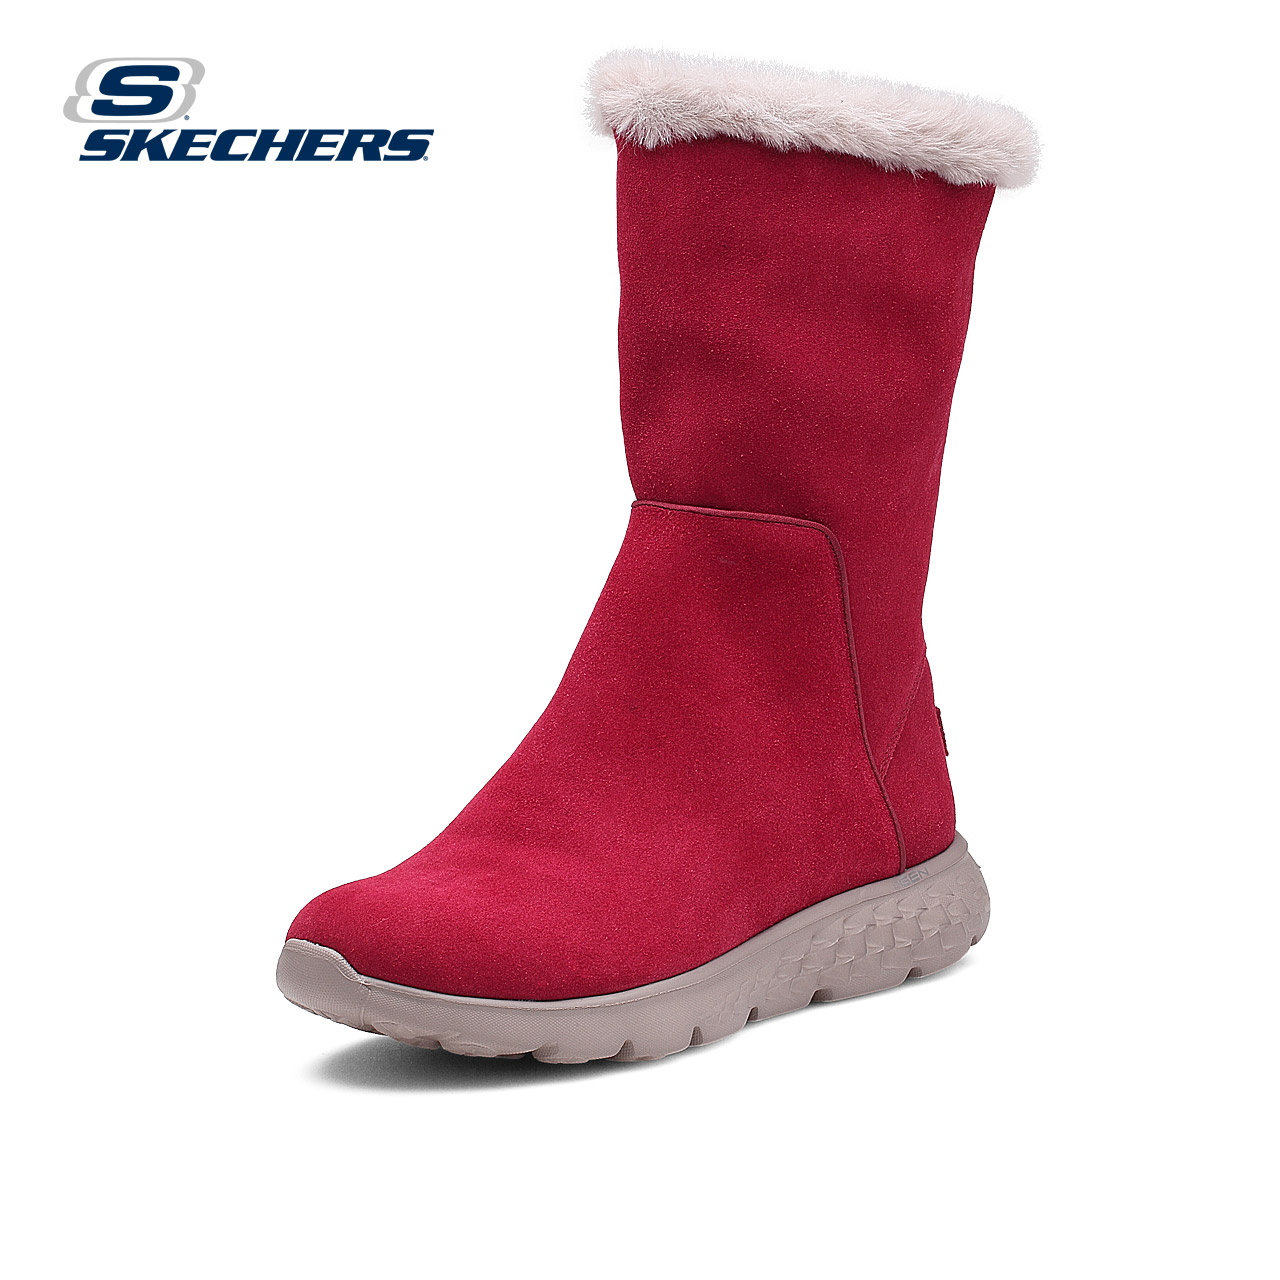 skechers斯凯奇冬季女鞋 新款保暖雪地靴 时尚反毛皮中筒靴14357产品展示图1